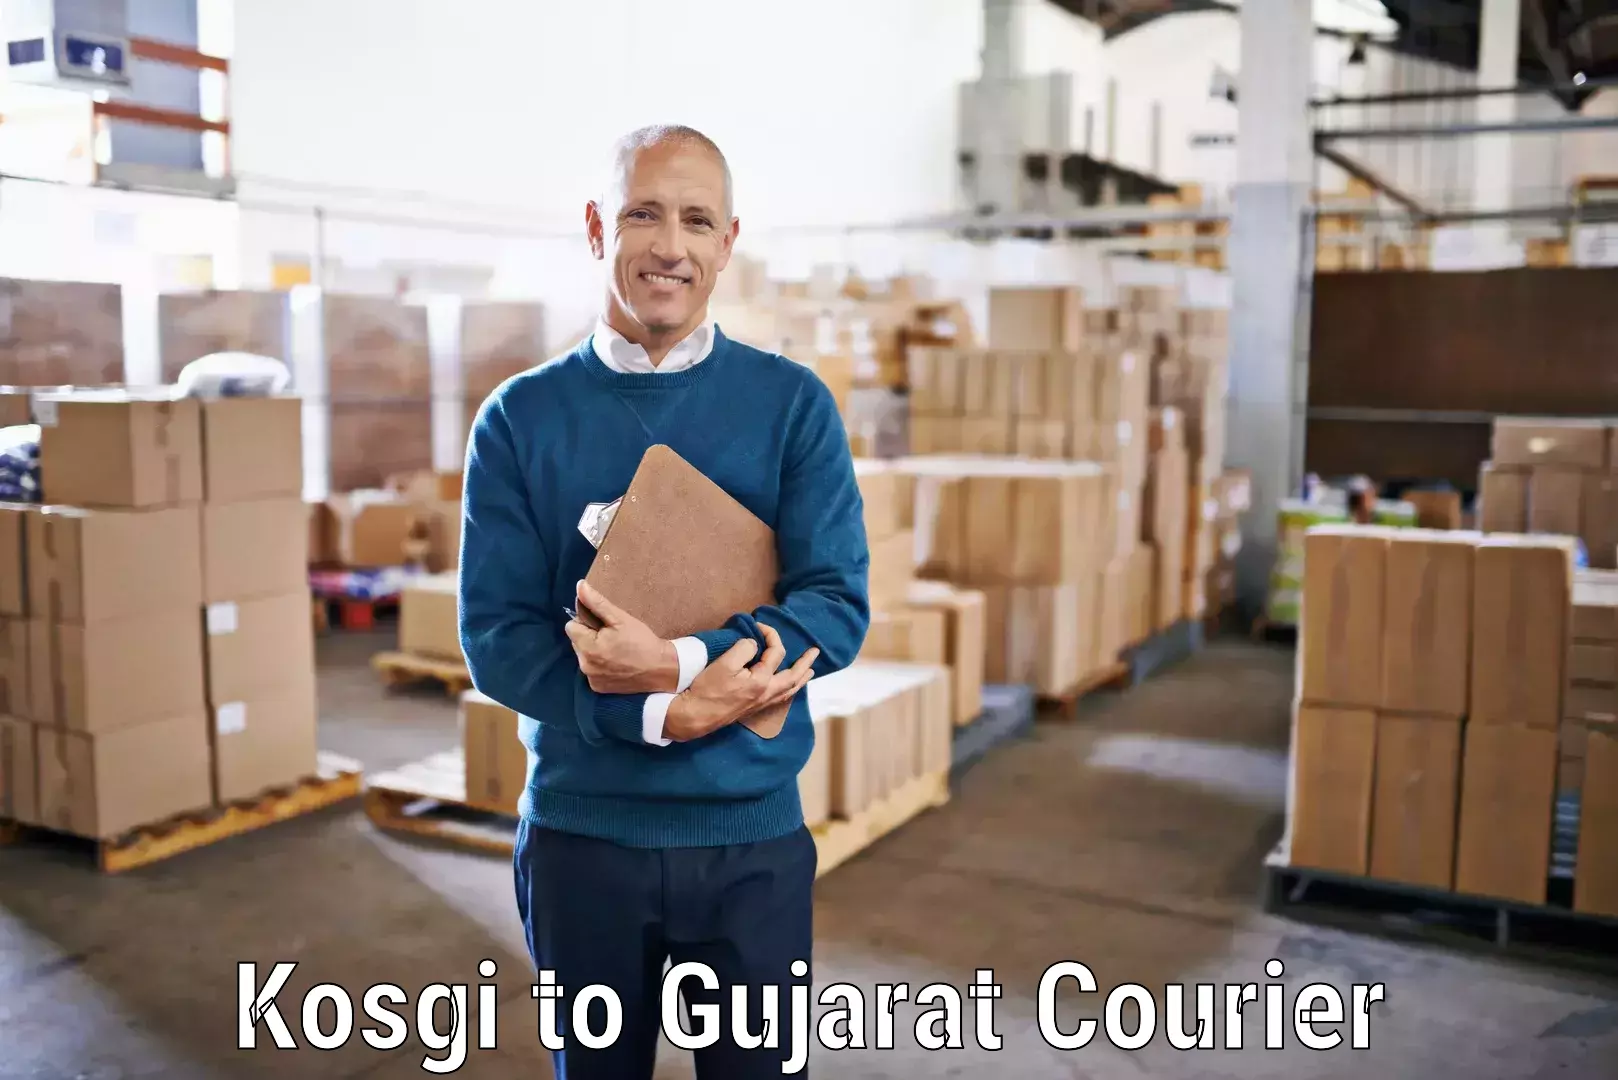 Special handling courier Kosgi to Karjan